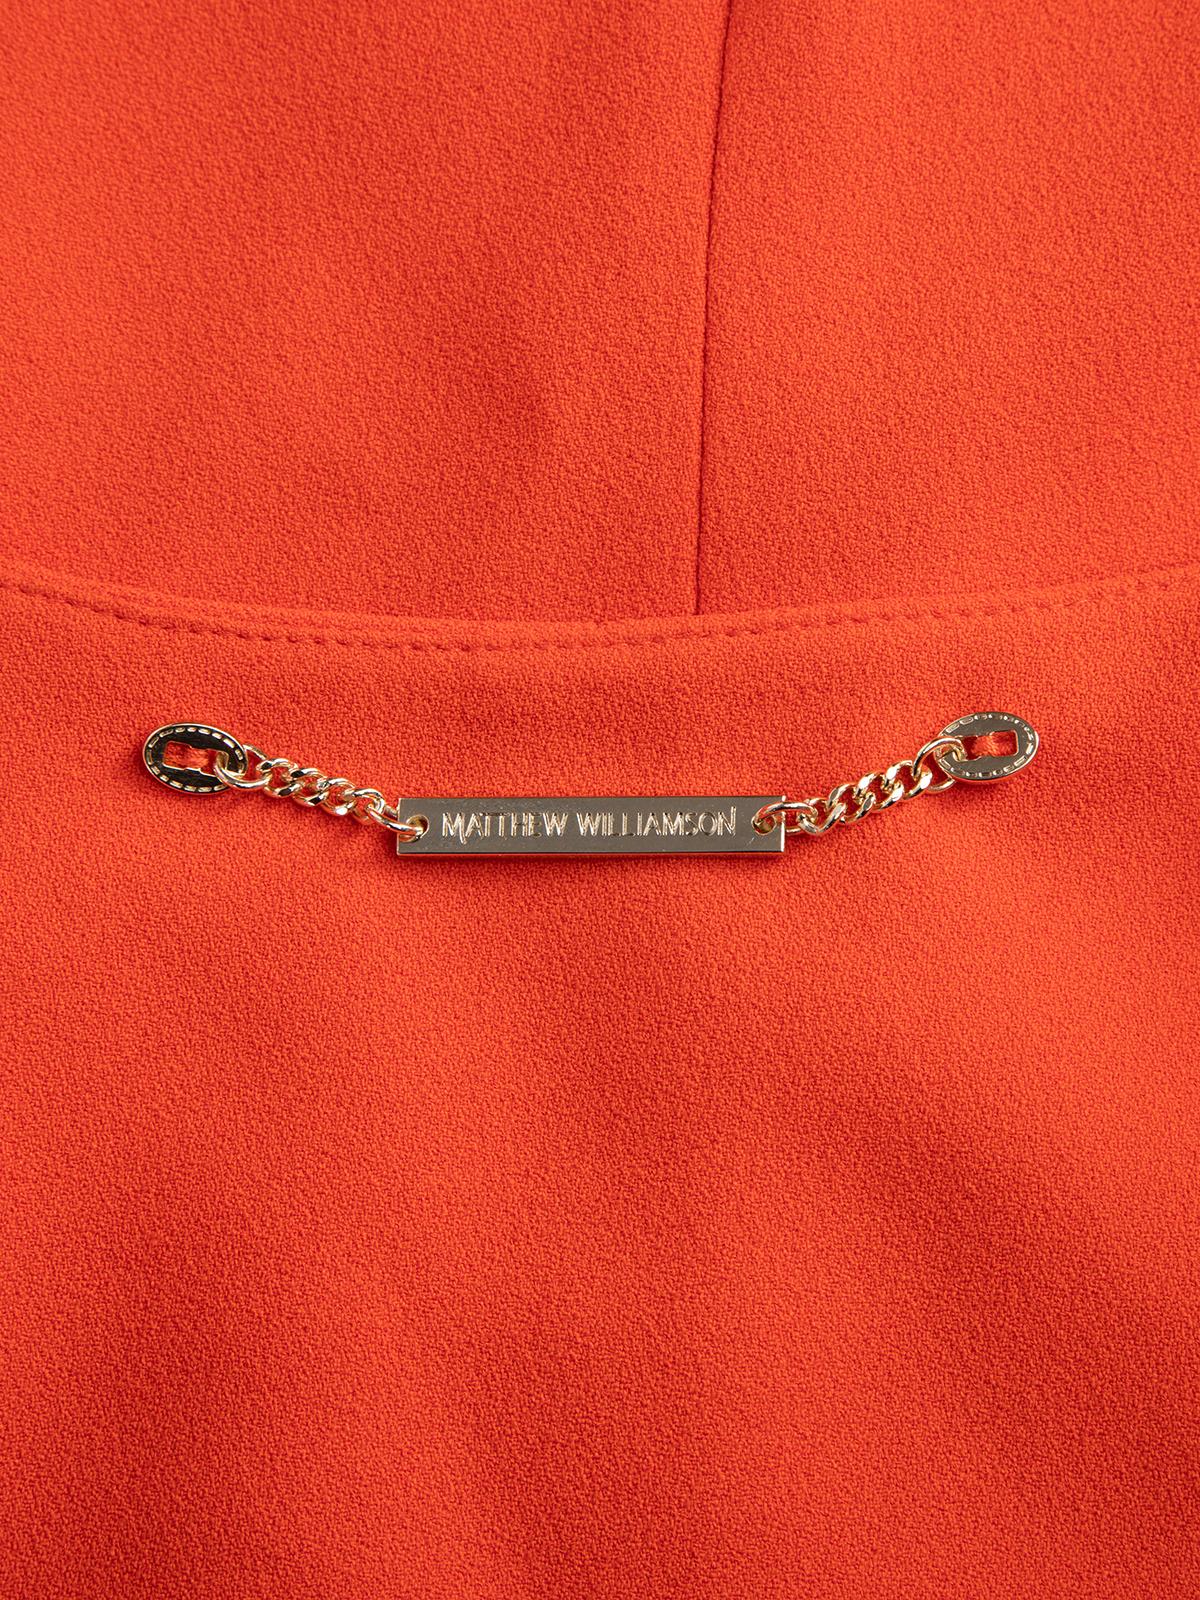 Pre-Loved Matthew Williamson Women's Orange Fitted Blazer Jacket 2